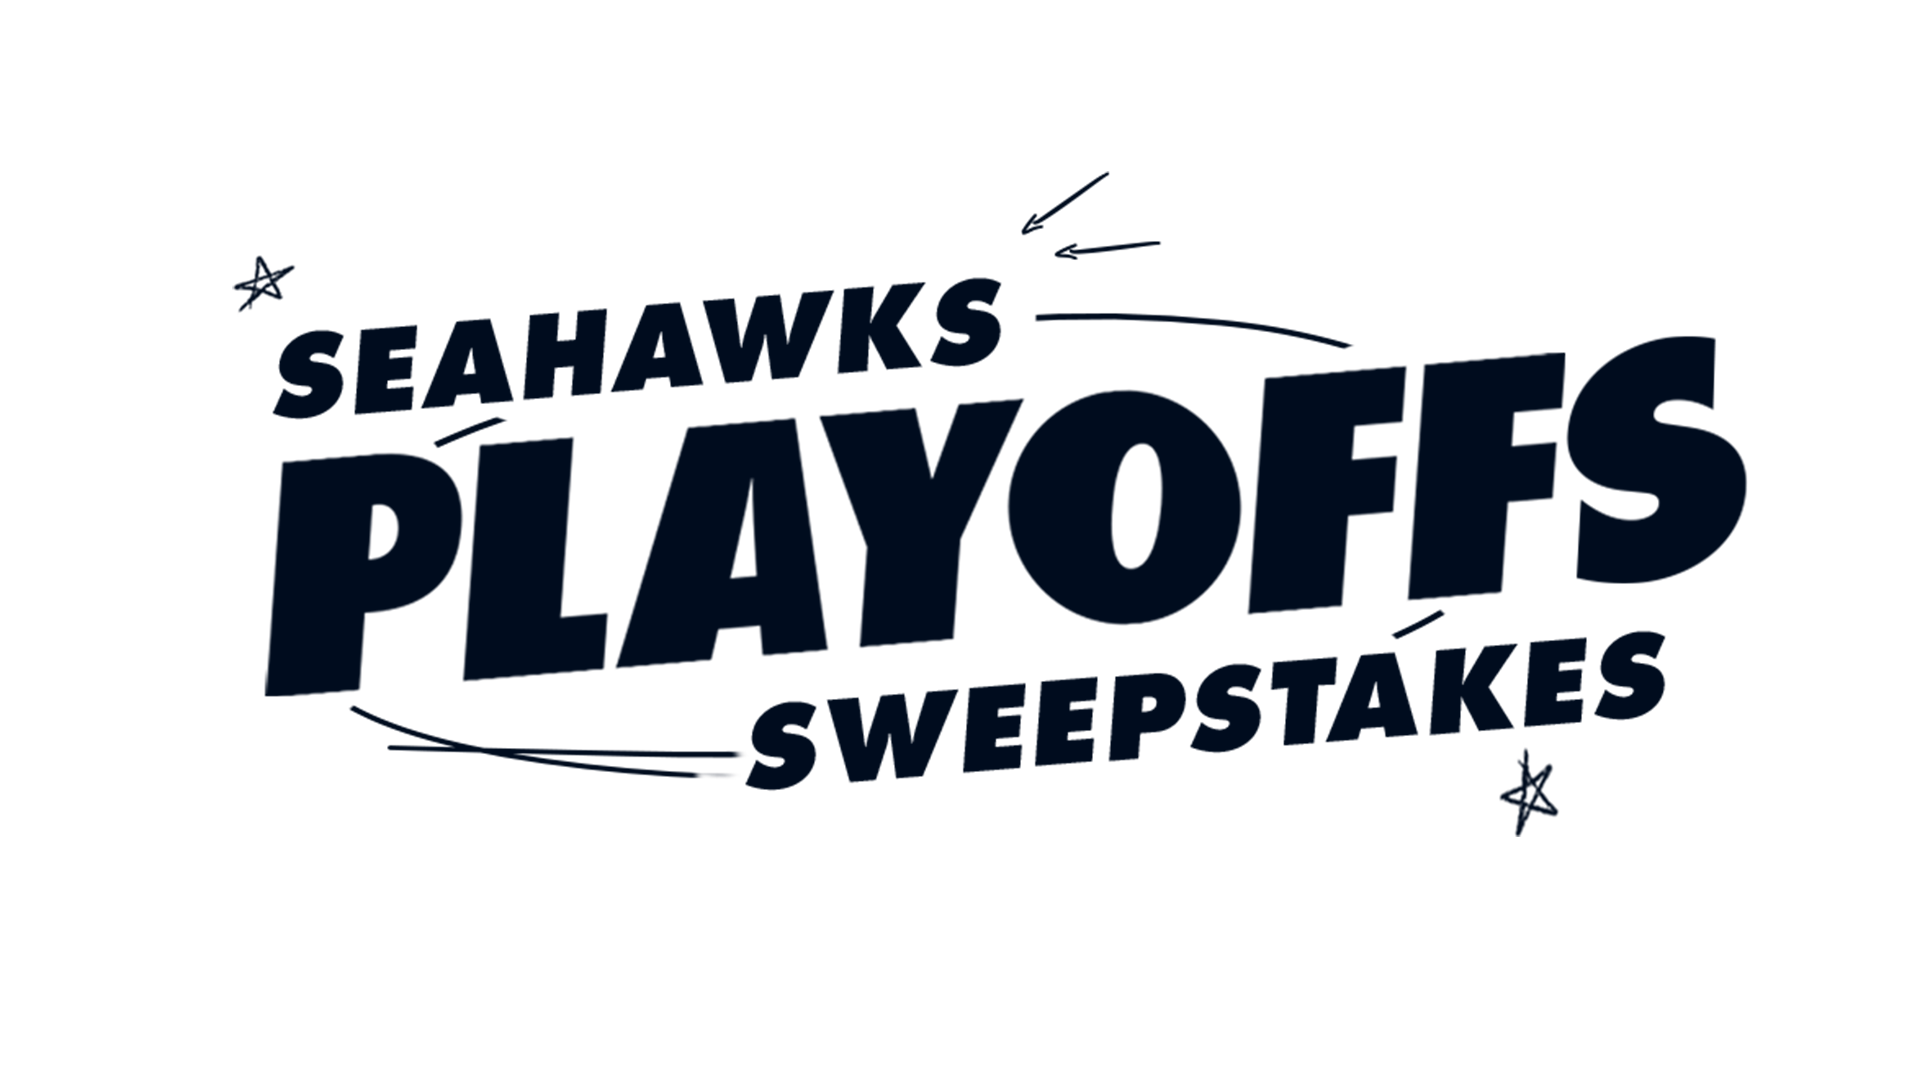 230109-Seahawks-Playoffs-Sweeps1920x1080